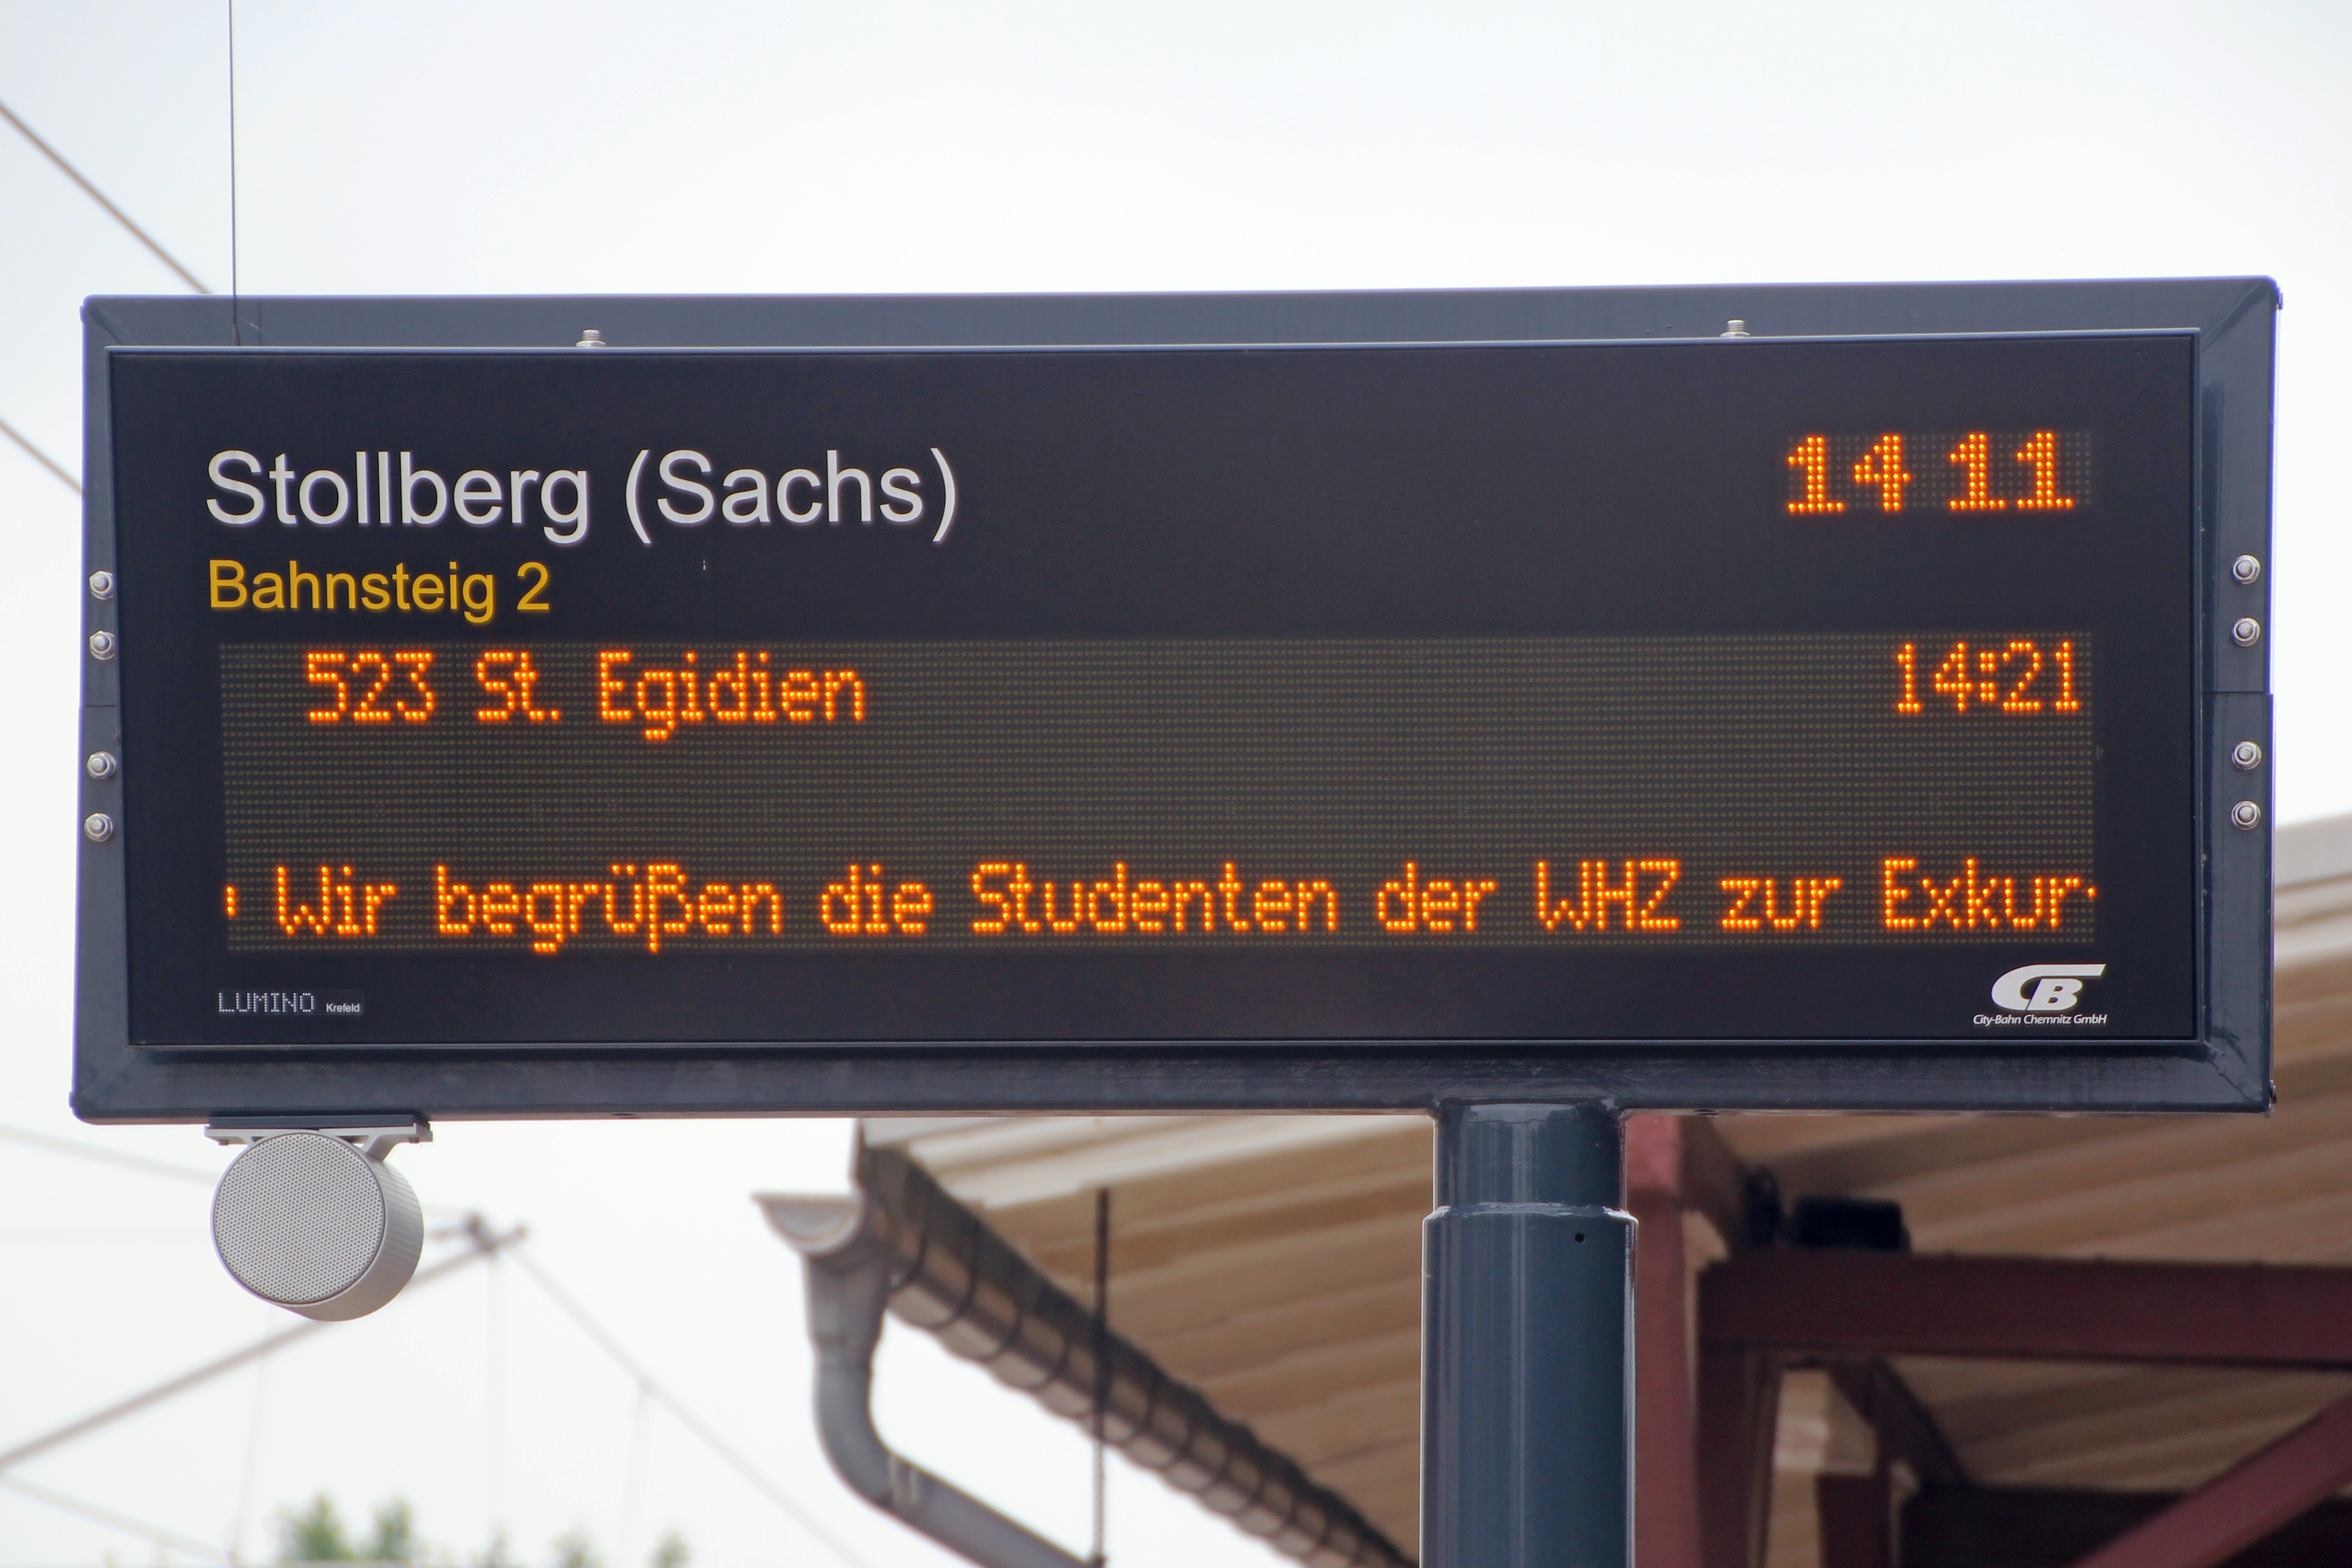 Foto: Anzeigetafel des Bahnsteig 2 in Stollberg (Sachs). Mit Einblendung des Schriftzuges. Wir begrüßen die Studenten der WHZ zur Exkursion.